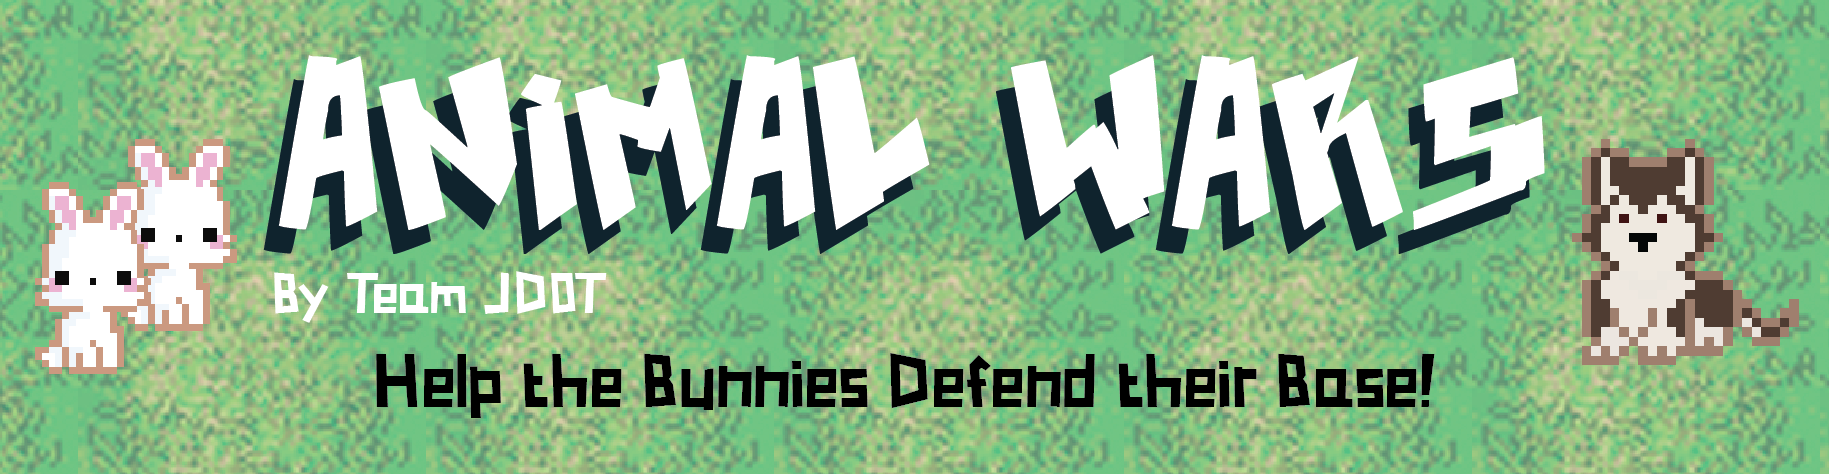 Animal Wars - Final Game